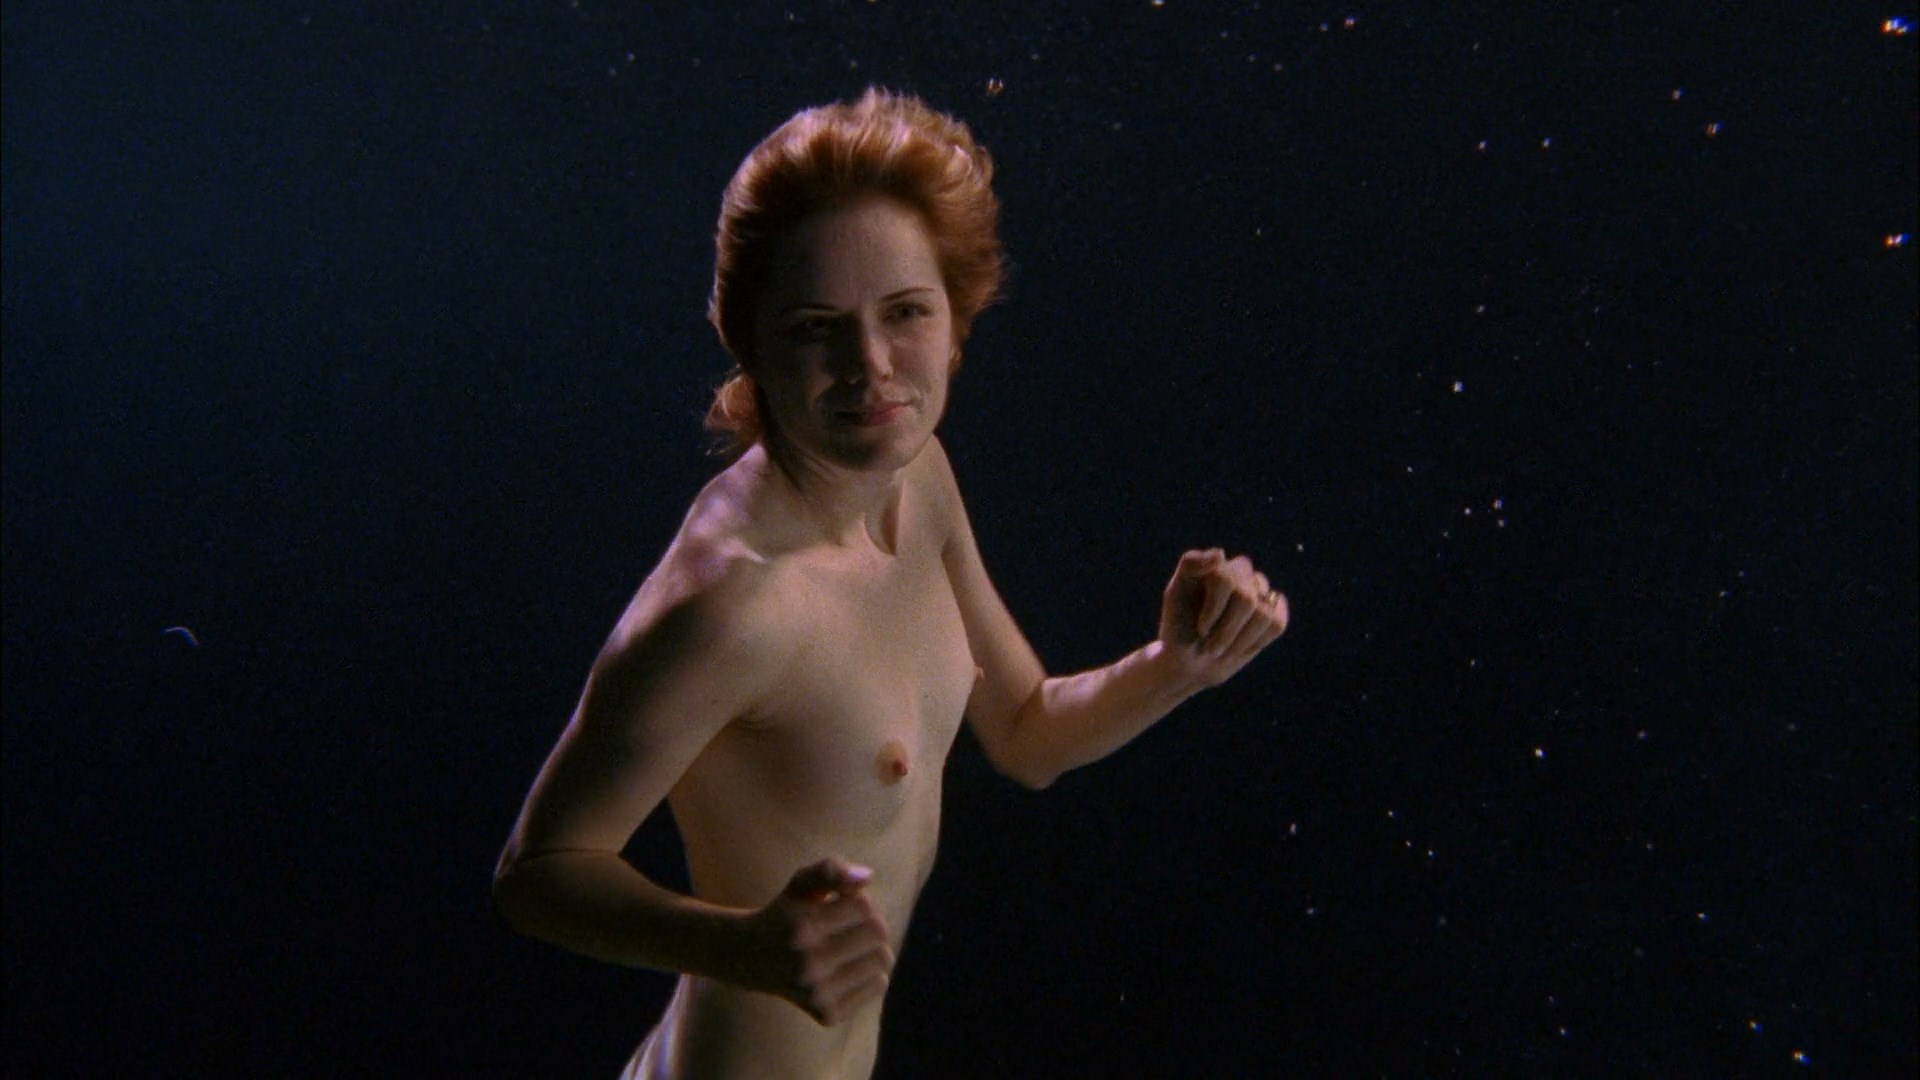 Justine bateman nudes 🔥 Nude Celeb Thumbs. 